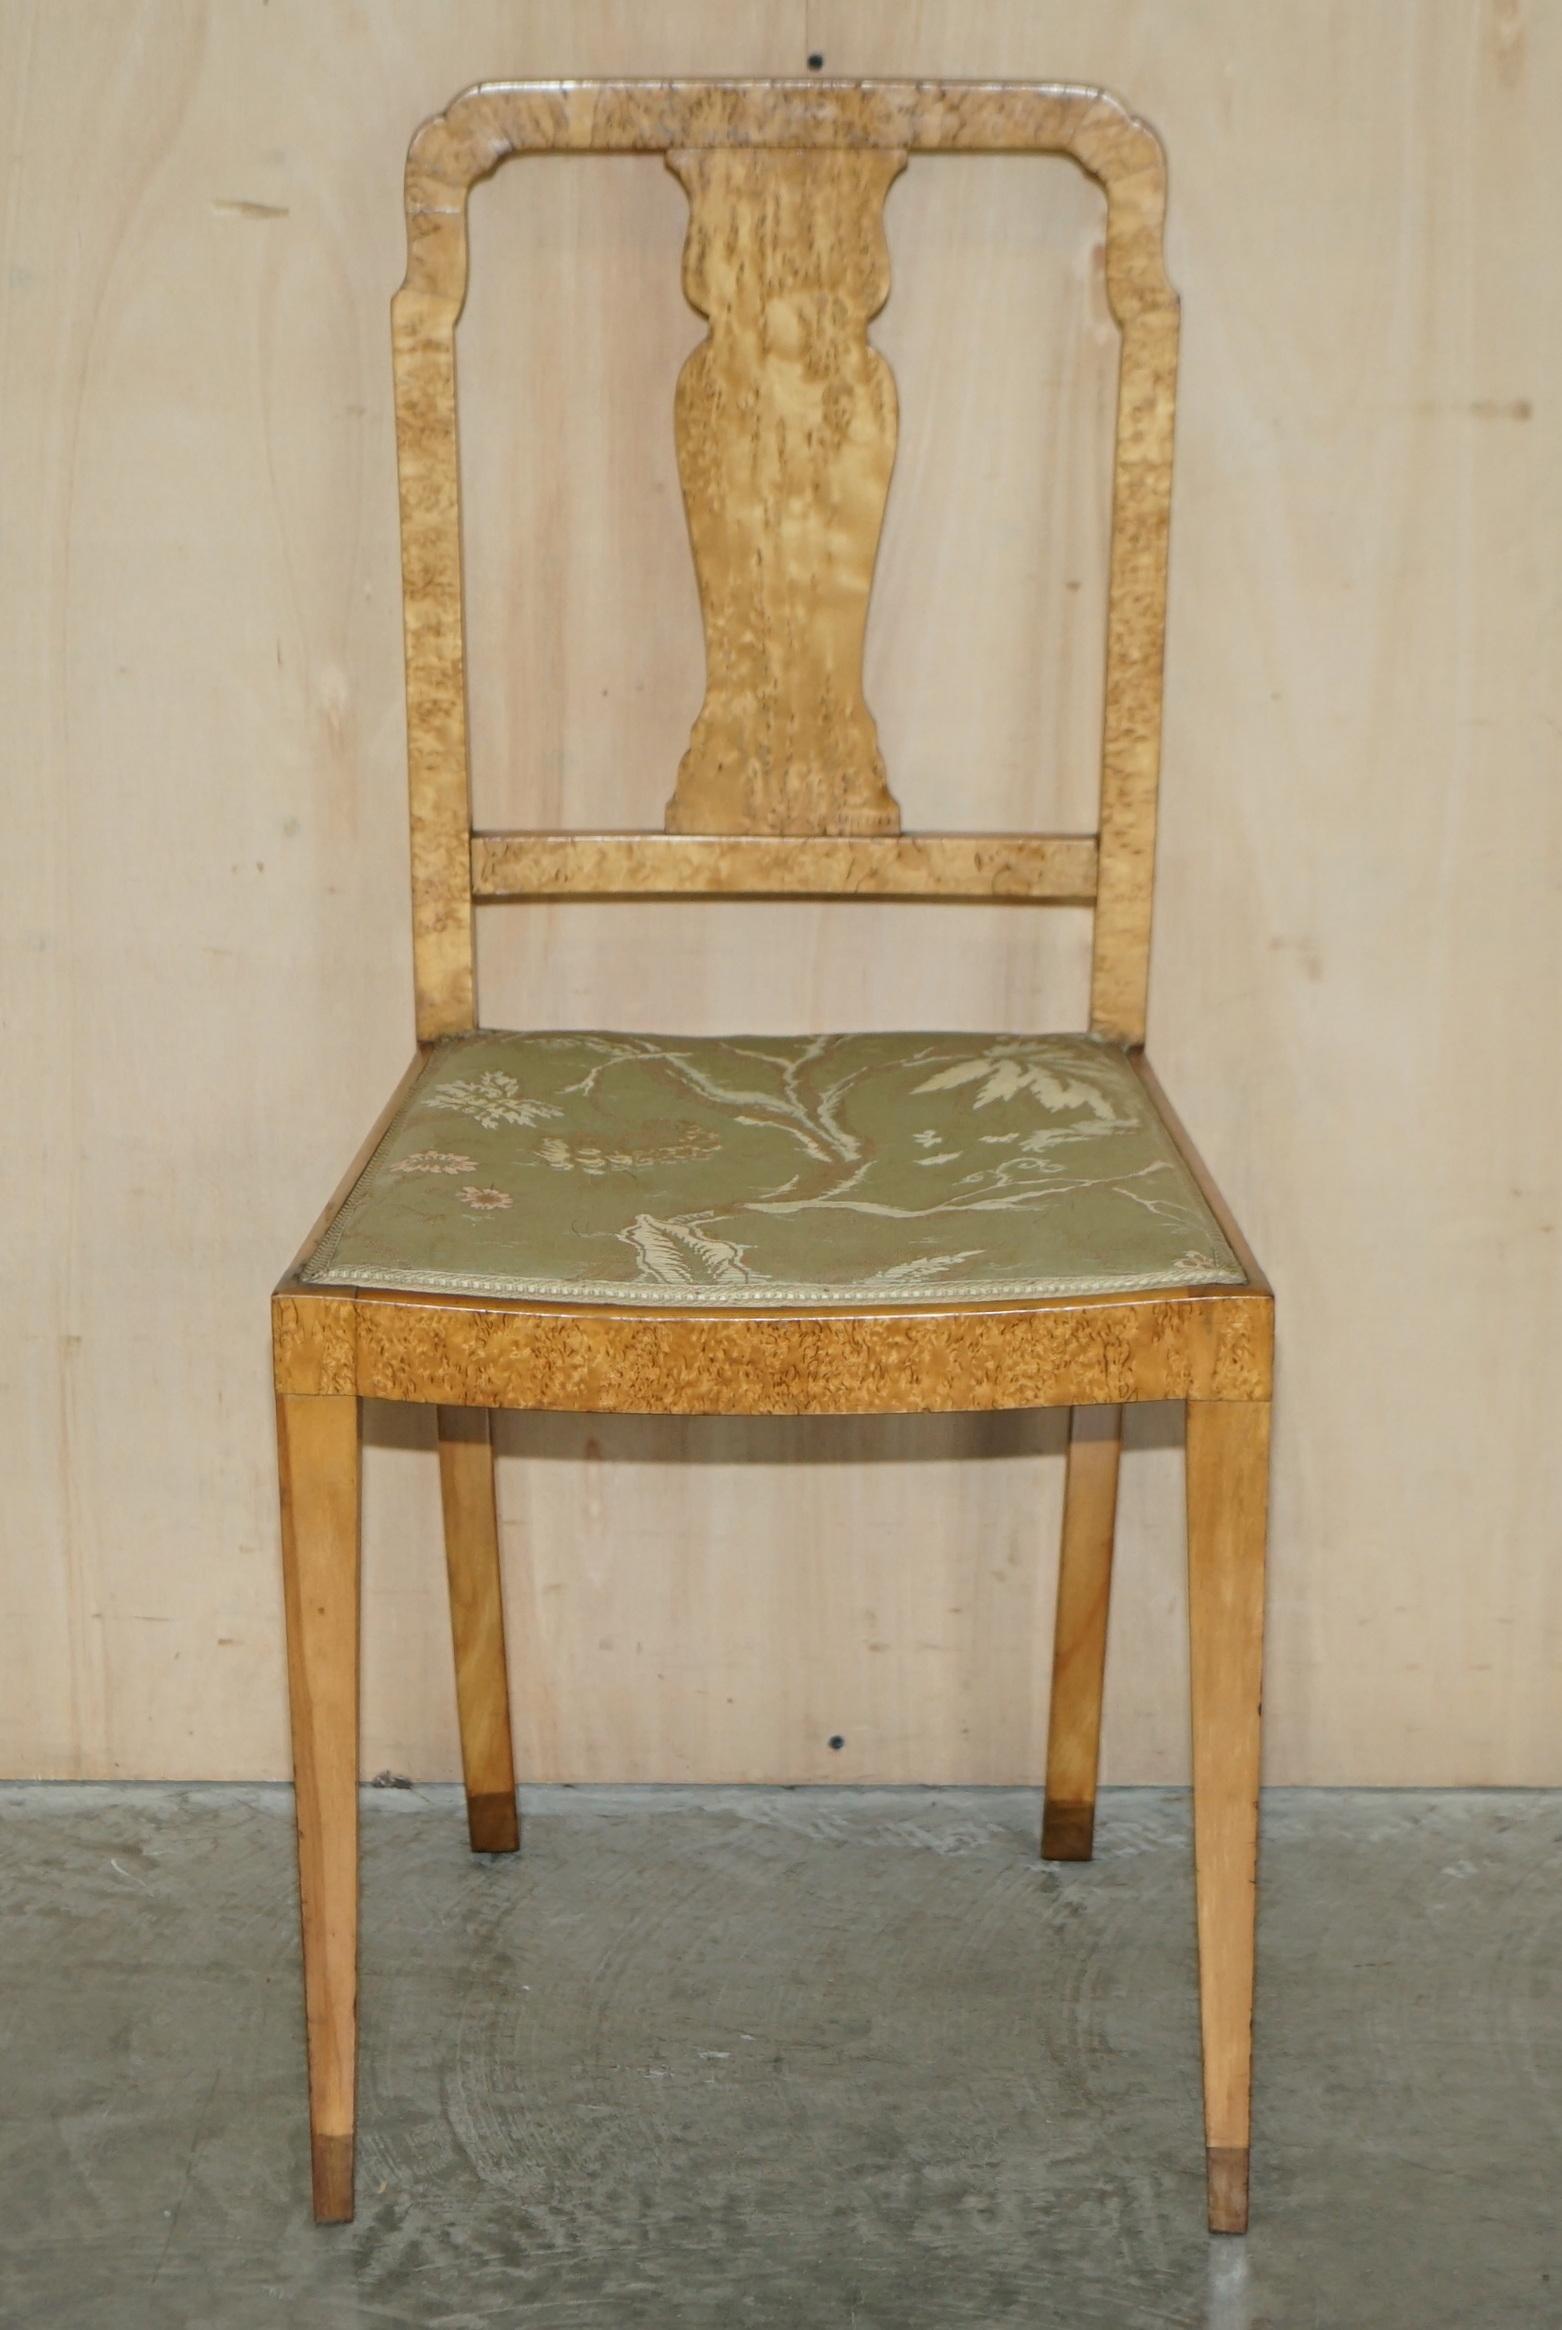 Wir freuen uns, diesen atemberaubenden originalen Art Deco Burr Maple Beistellstuhl, der Teil einer großen Sitzgruppe ist, zum Verkauf anzubieten.

Dies ist Teil einer Suite, insgesamt habe ich einen Beistellstuhl, einen Schminktischhocker, einen